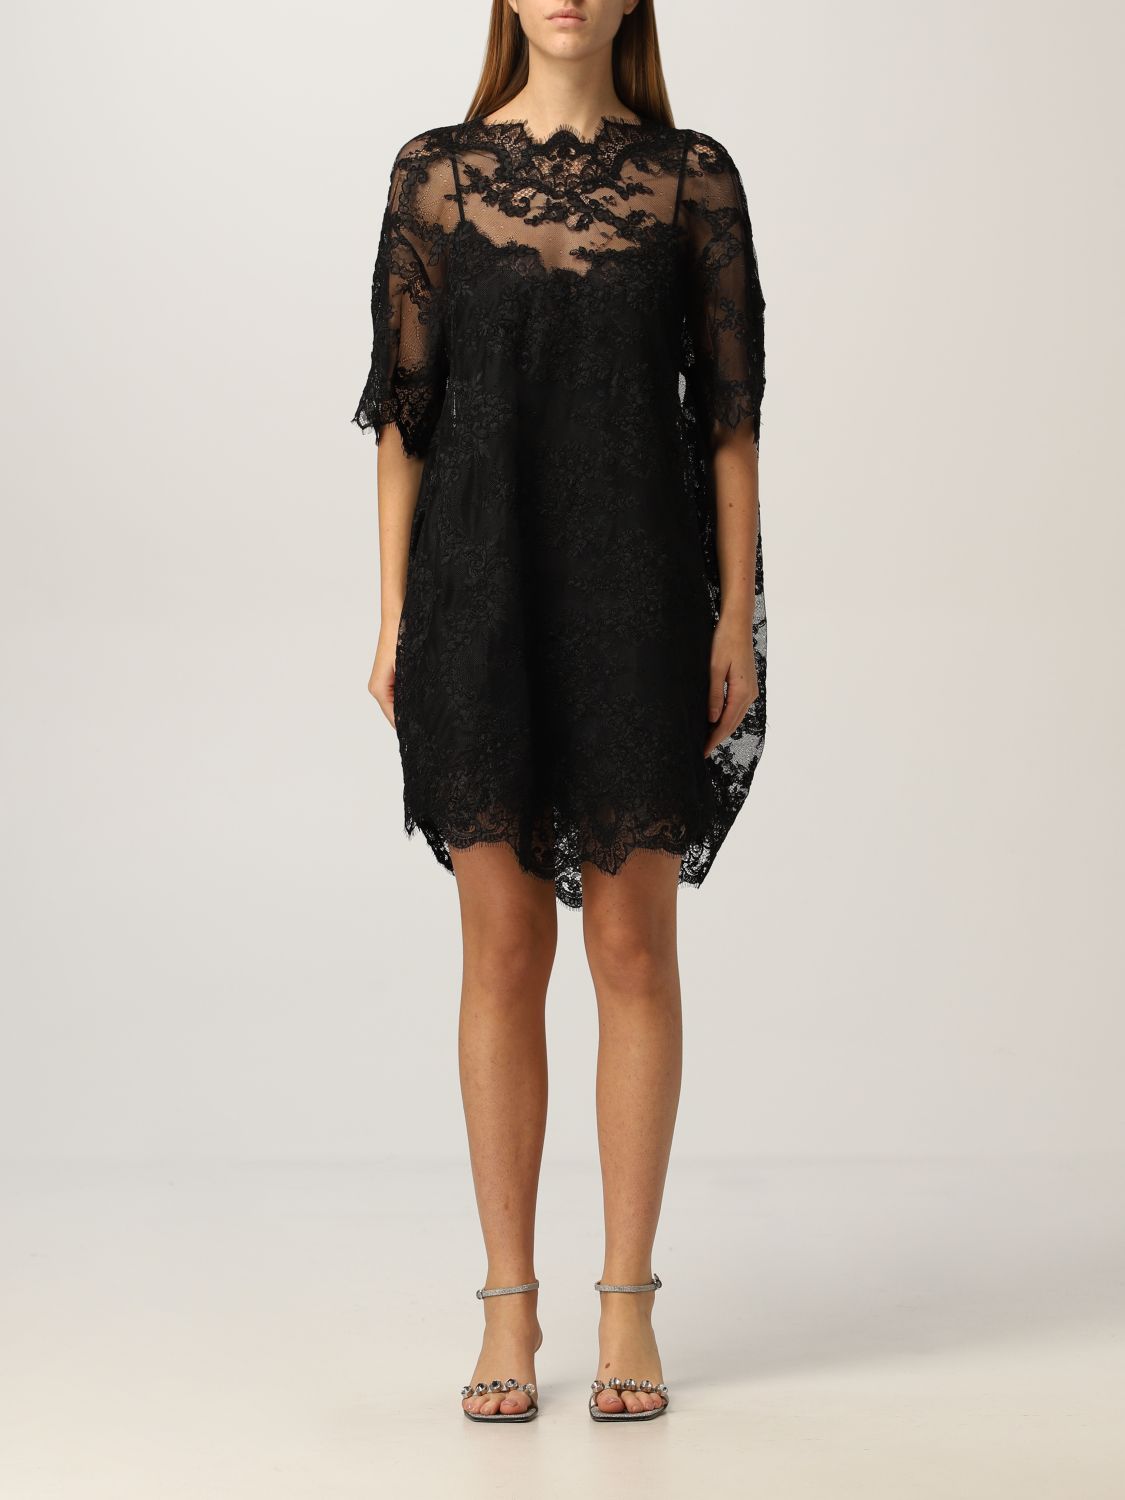 ERMANNO SCERVINO: lace mini dress - Black | Ermanno Scervino dress ...